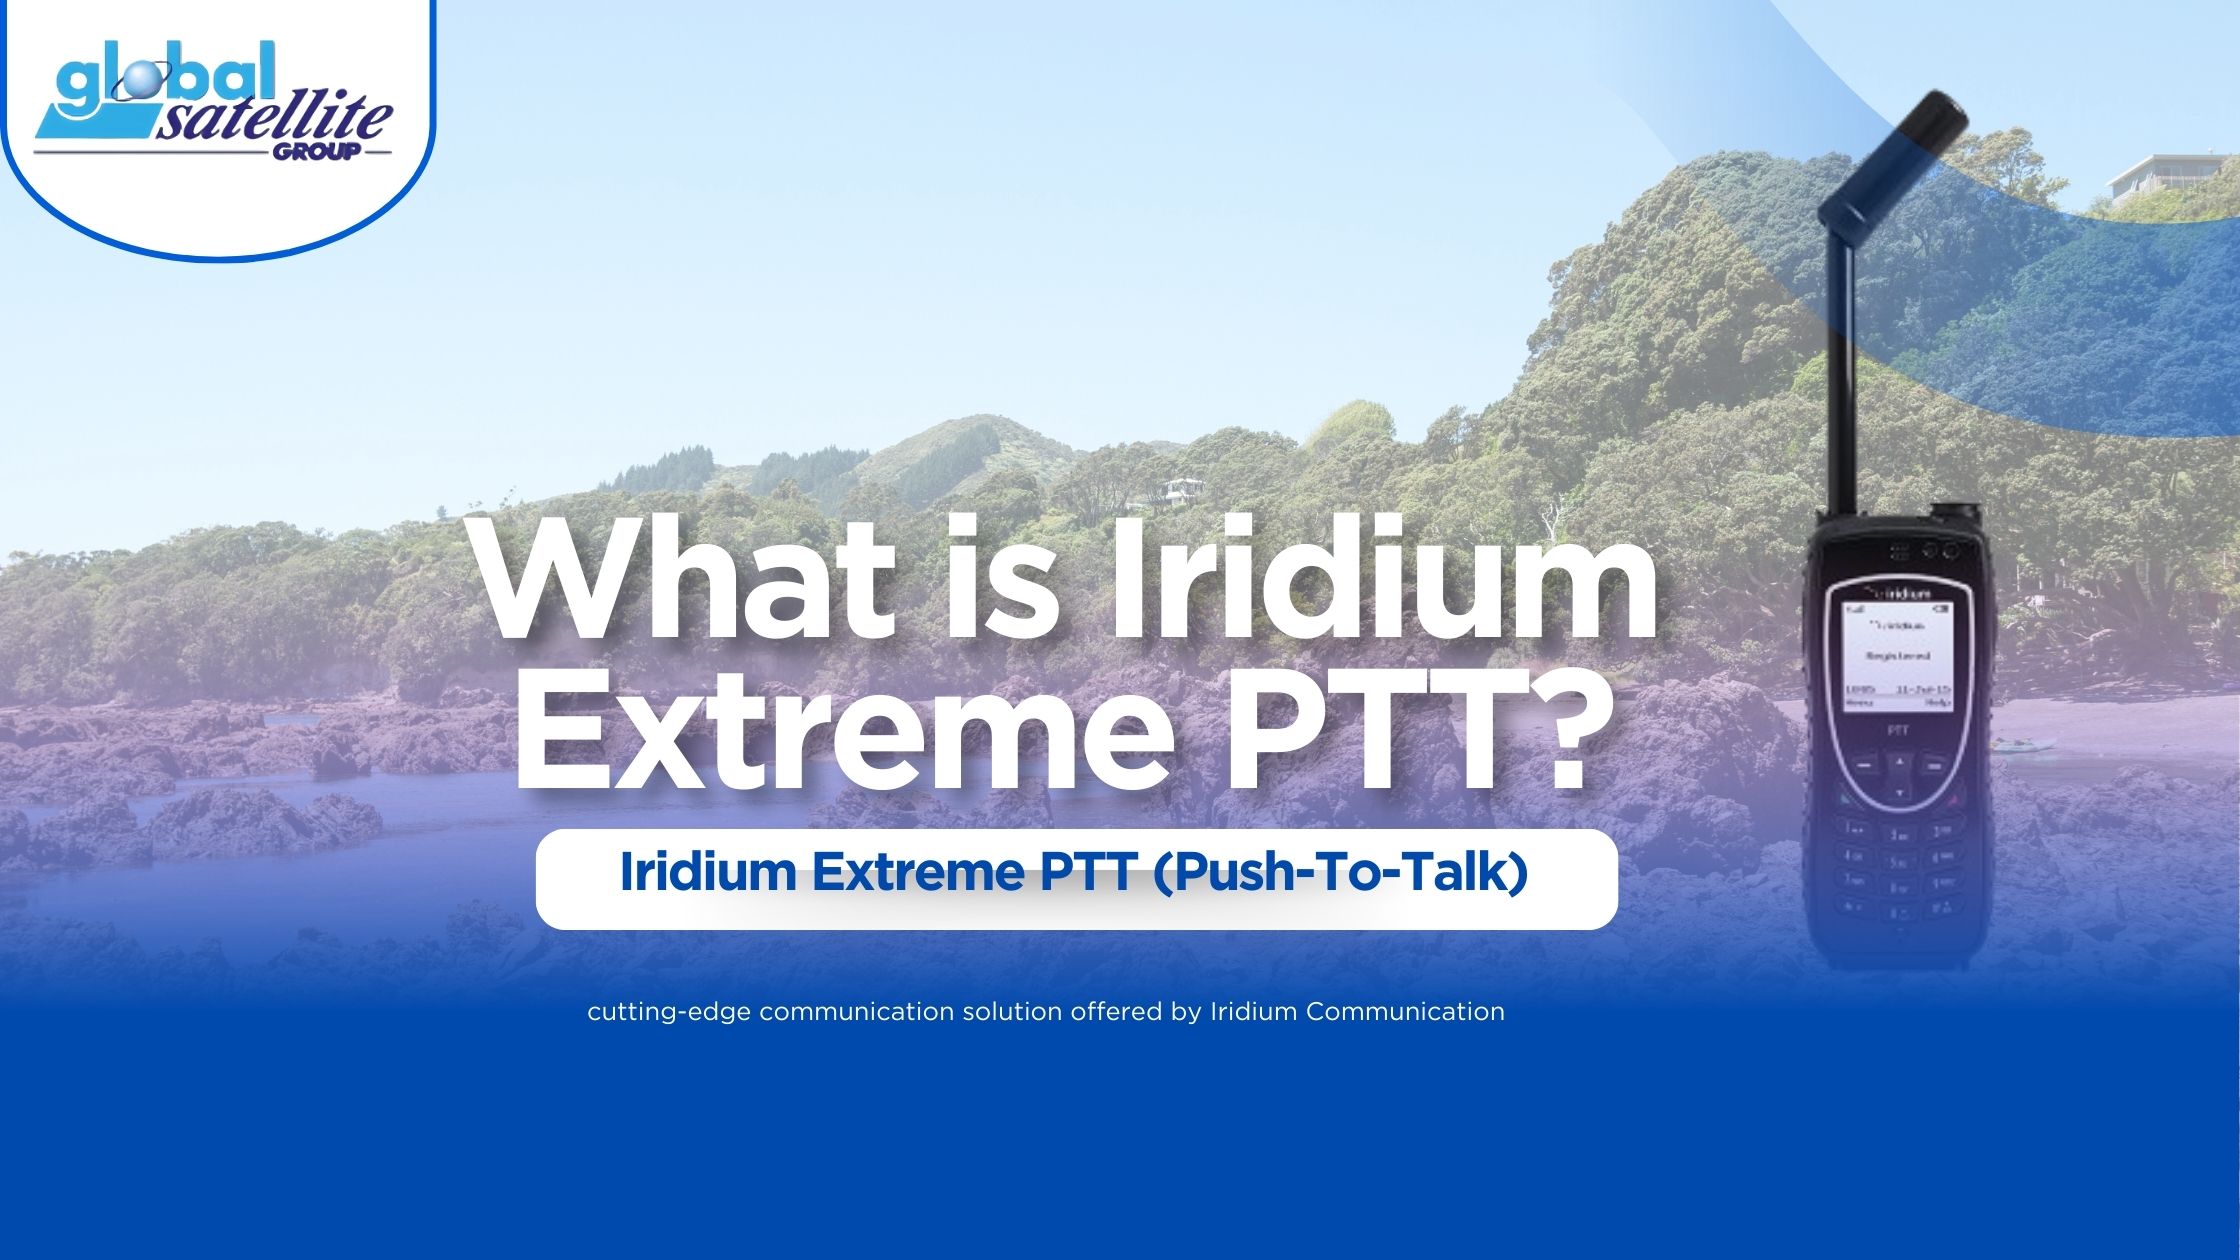 What is Iridium Extreme PTT?